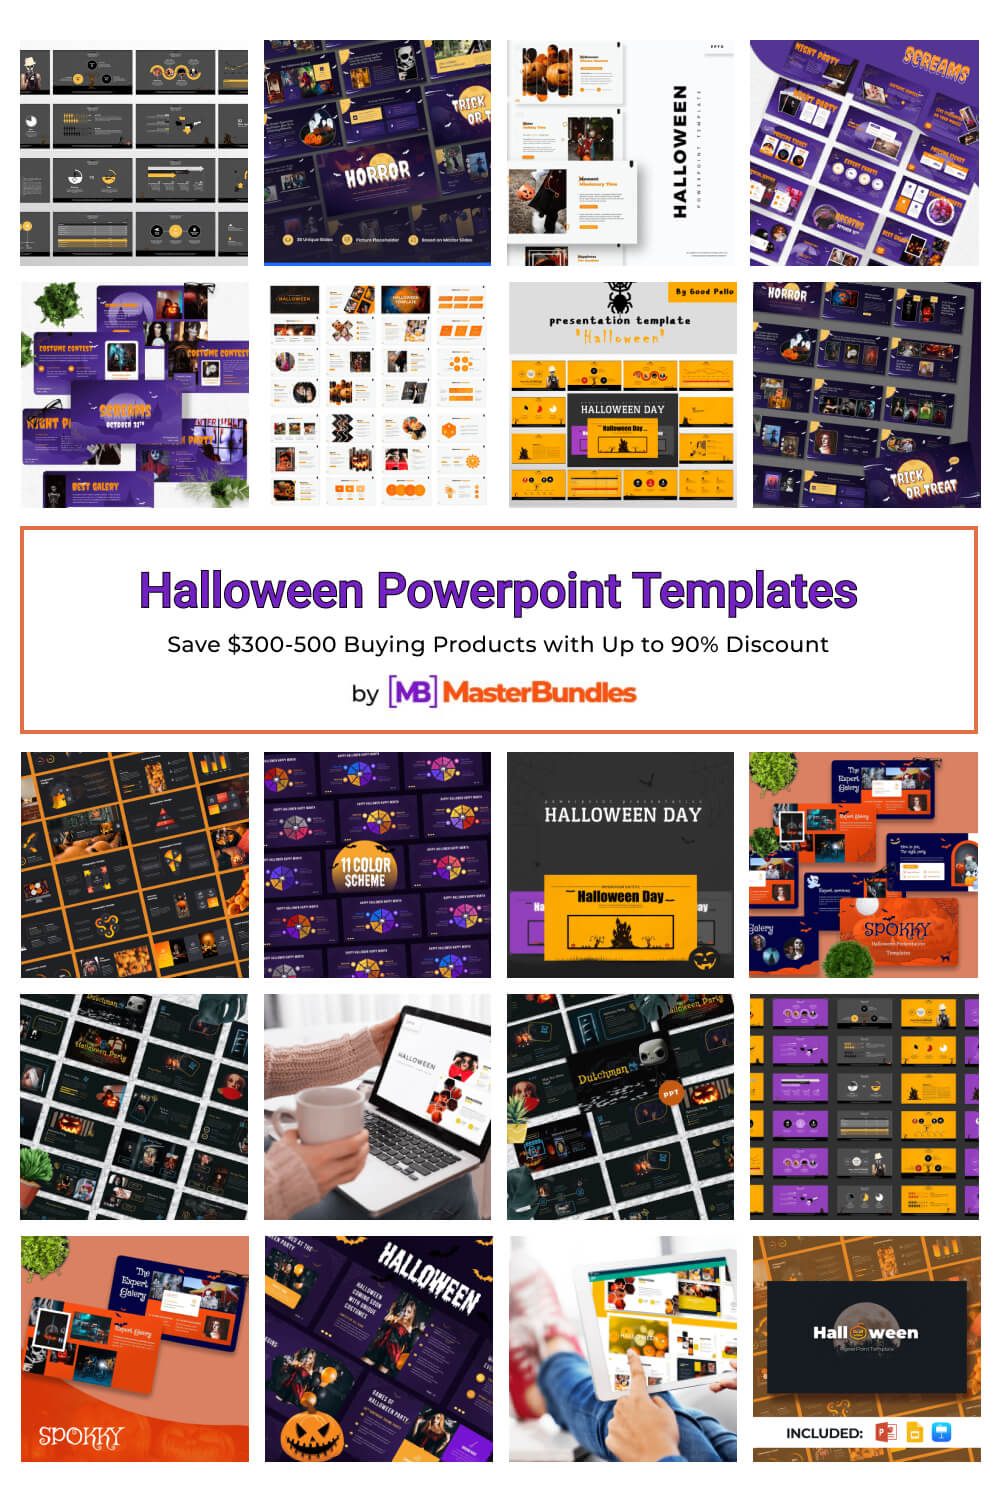 halloween powerpoint templates pinterest image.